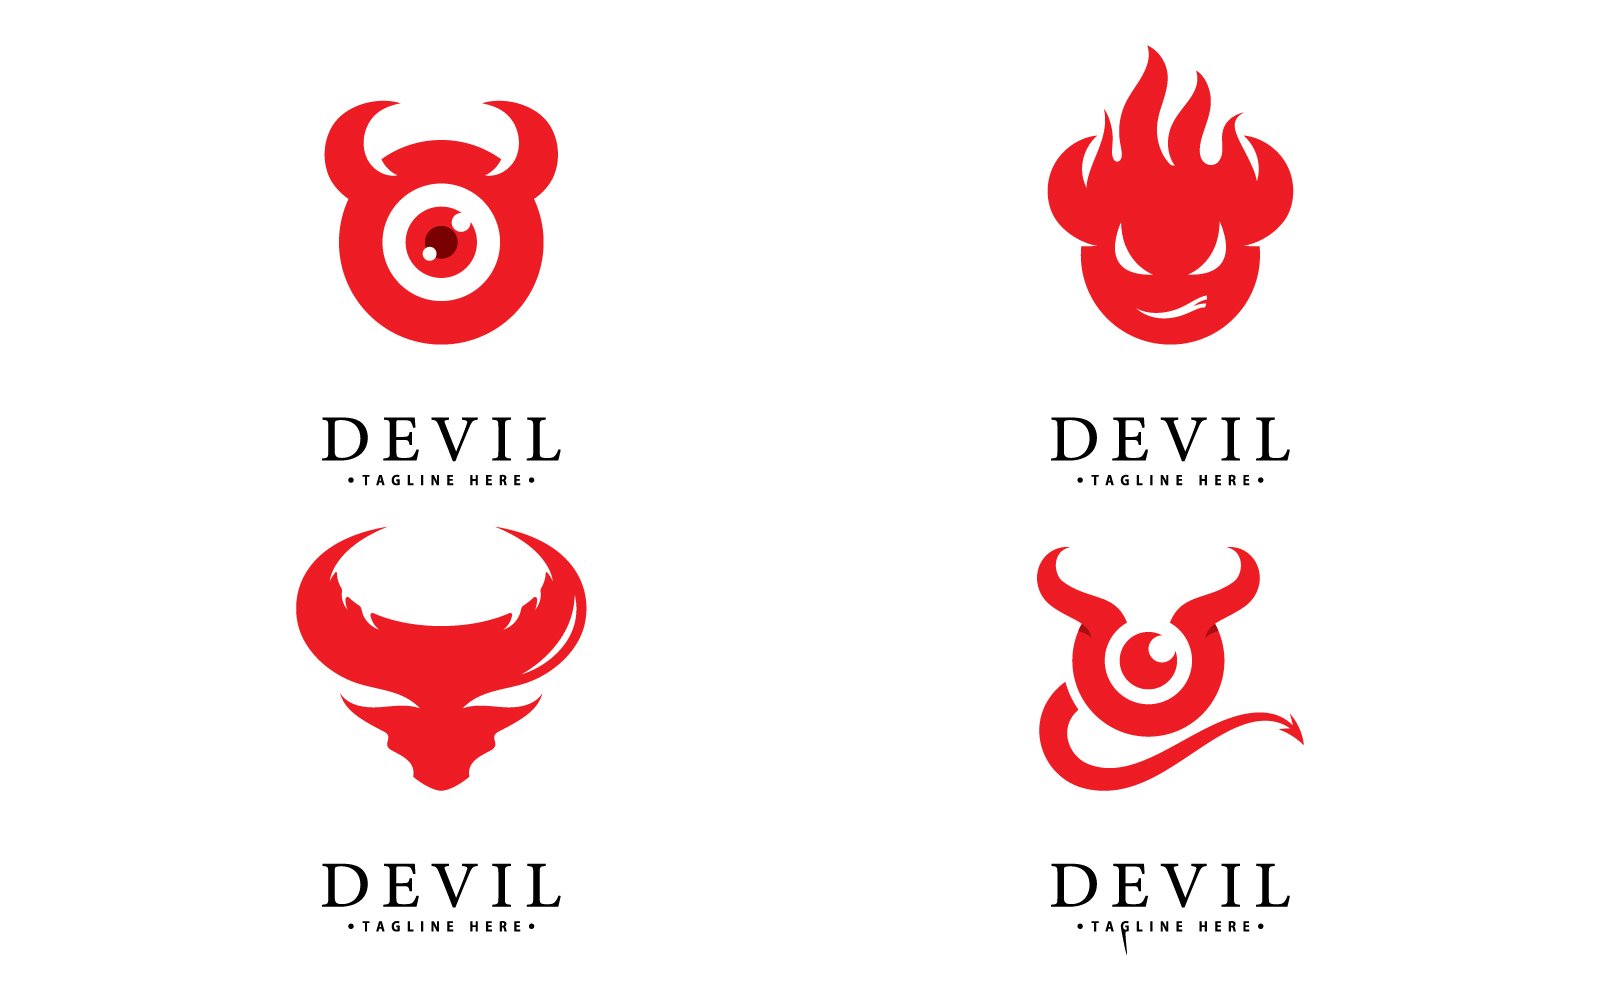 Kit Graphique #417371 Devil Illustration Divers Modles Web - Logo template Preview